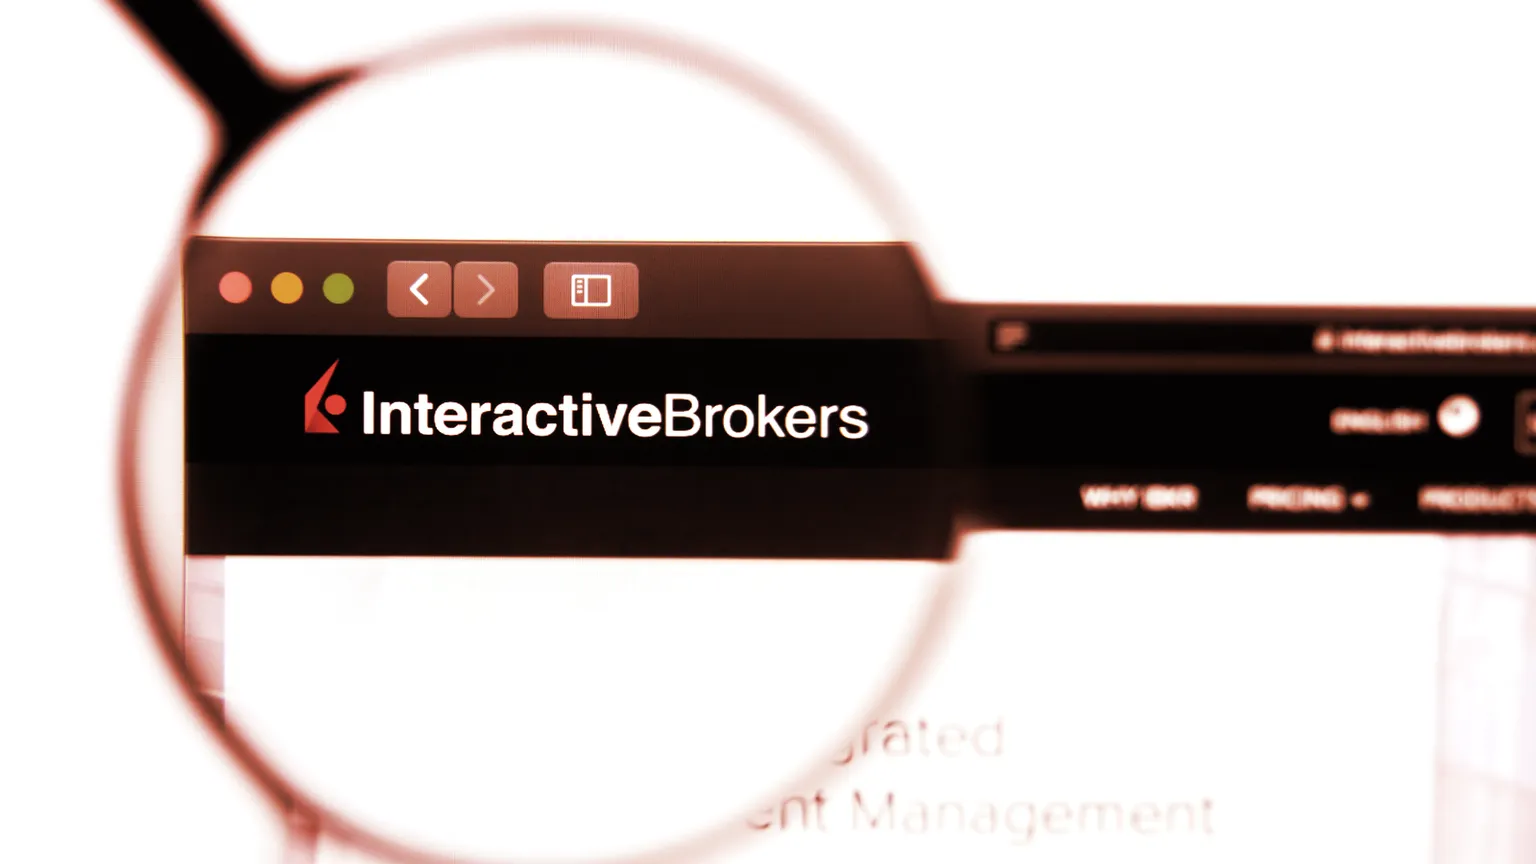 Interactive Brokers is an online brokerage platform. Image: Shutterstock